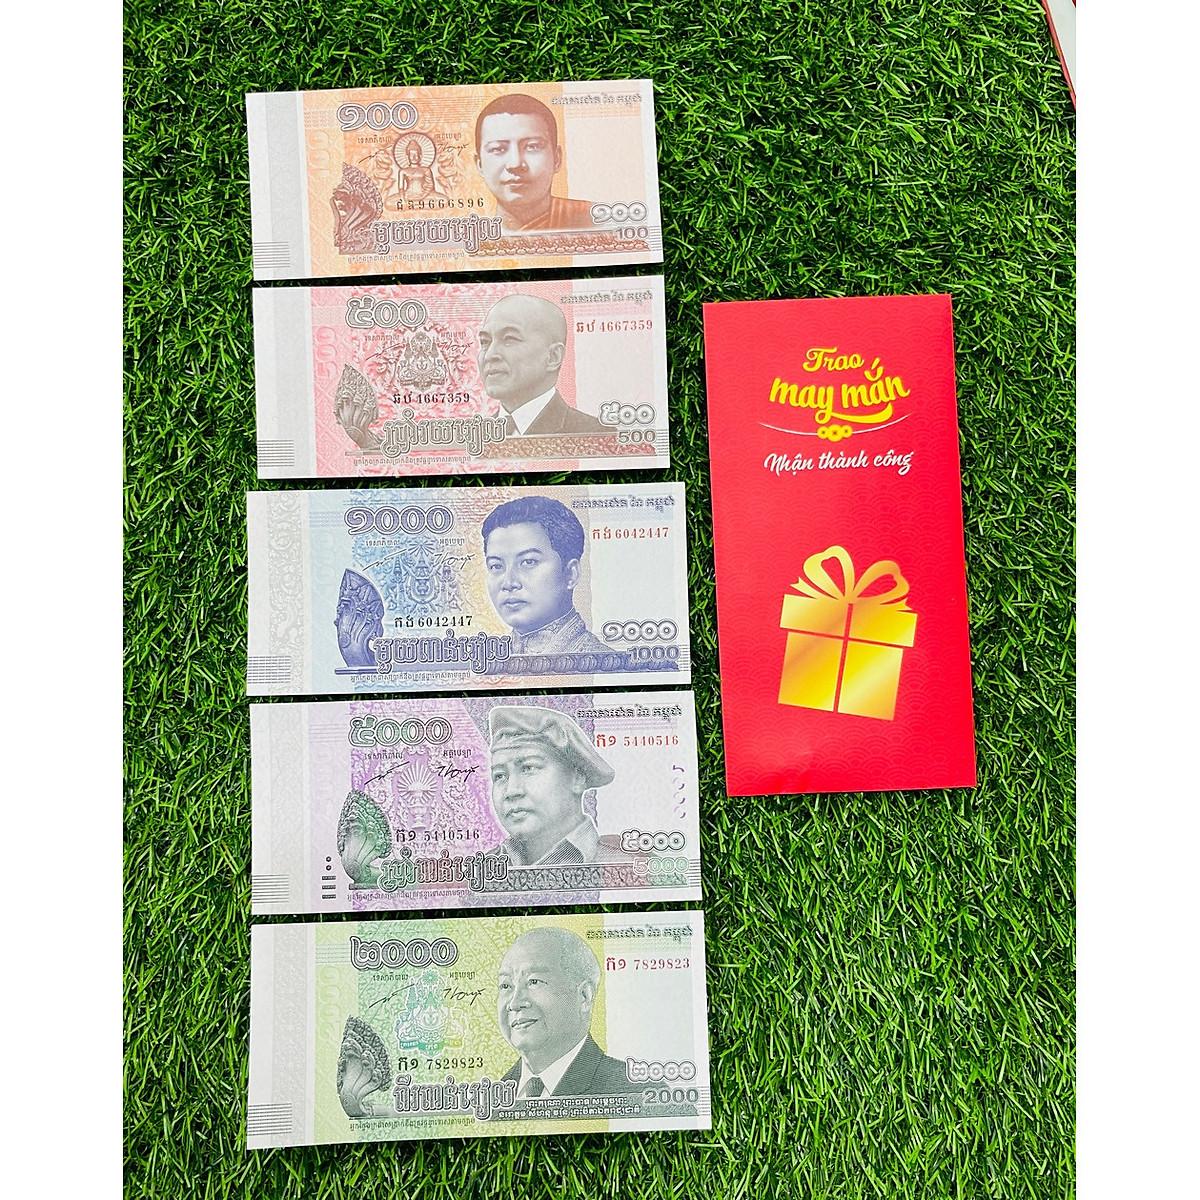 Bộ tiền Campuchia 100 500 1000 2000 5000 Riels [5 TỜ] hình ảnh chùa nổi tiếng, mới 100% UNC, tặng bao lì xì